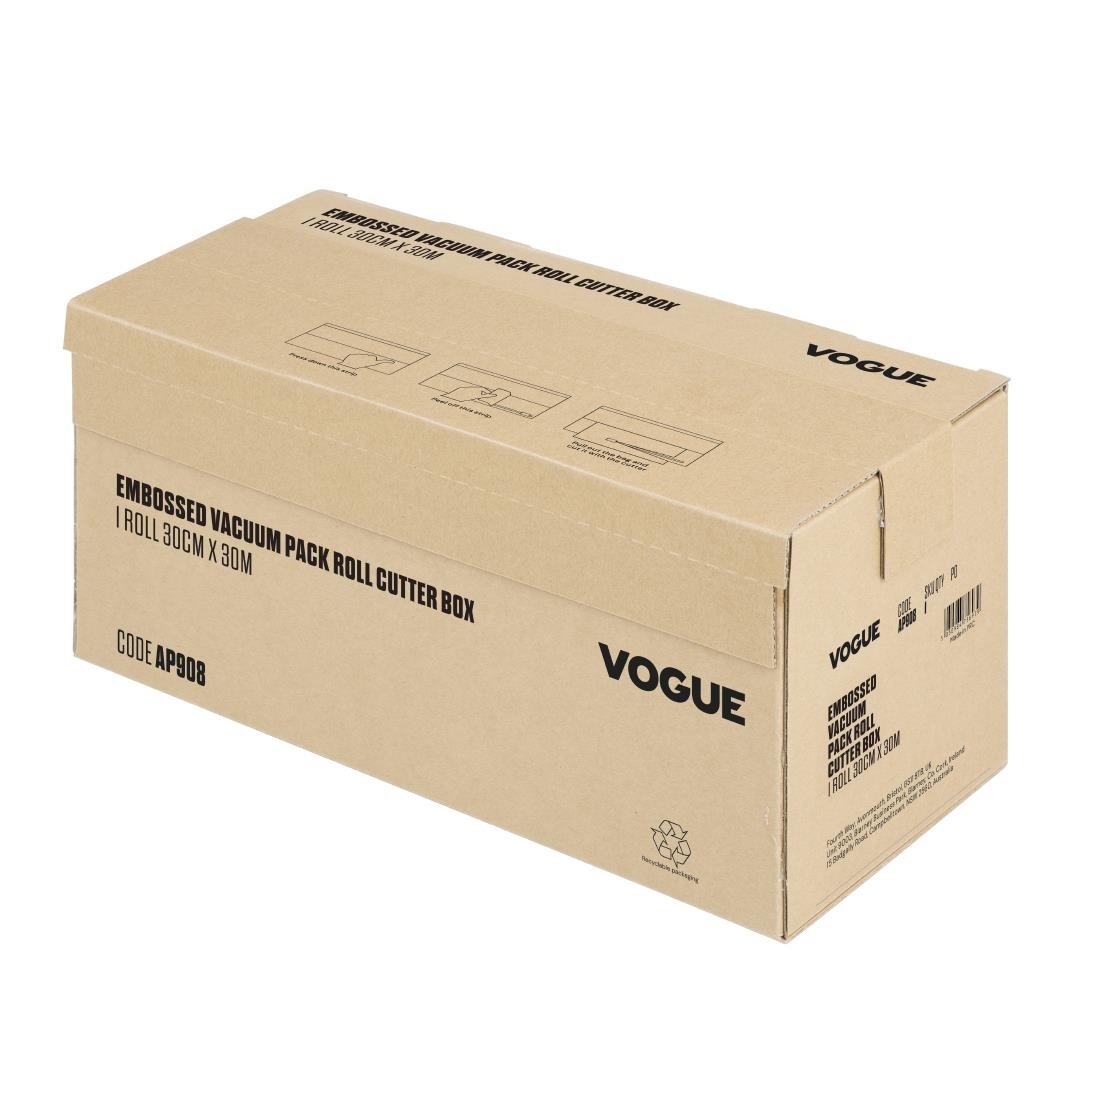 Rouleau d'emballage sous vide Vogue avec boîte de découpe (gaufré), largeur 300 mm